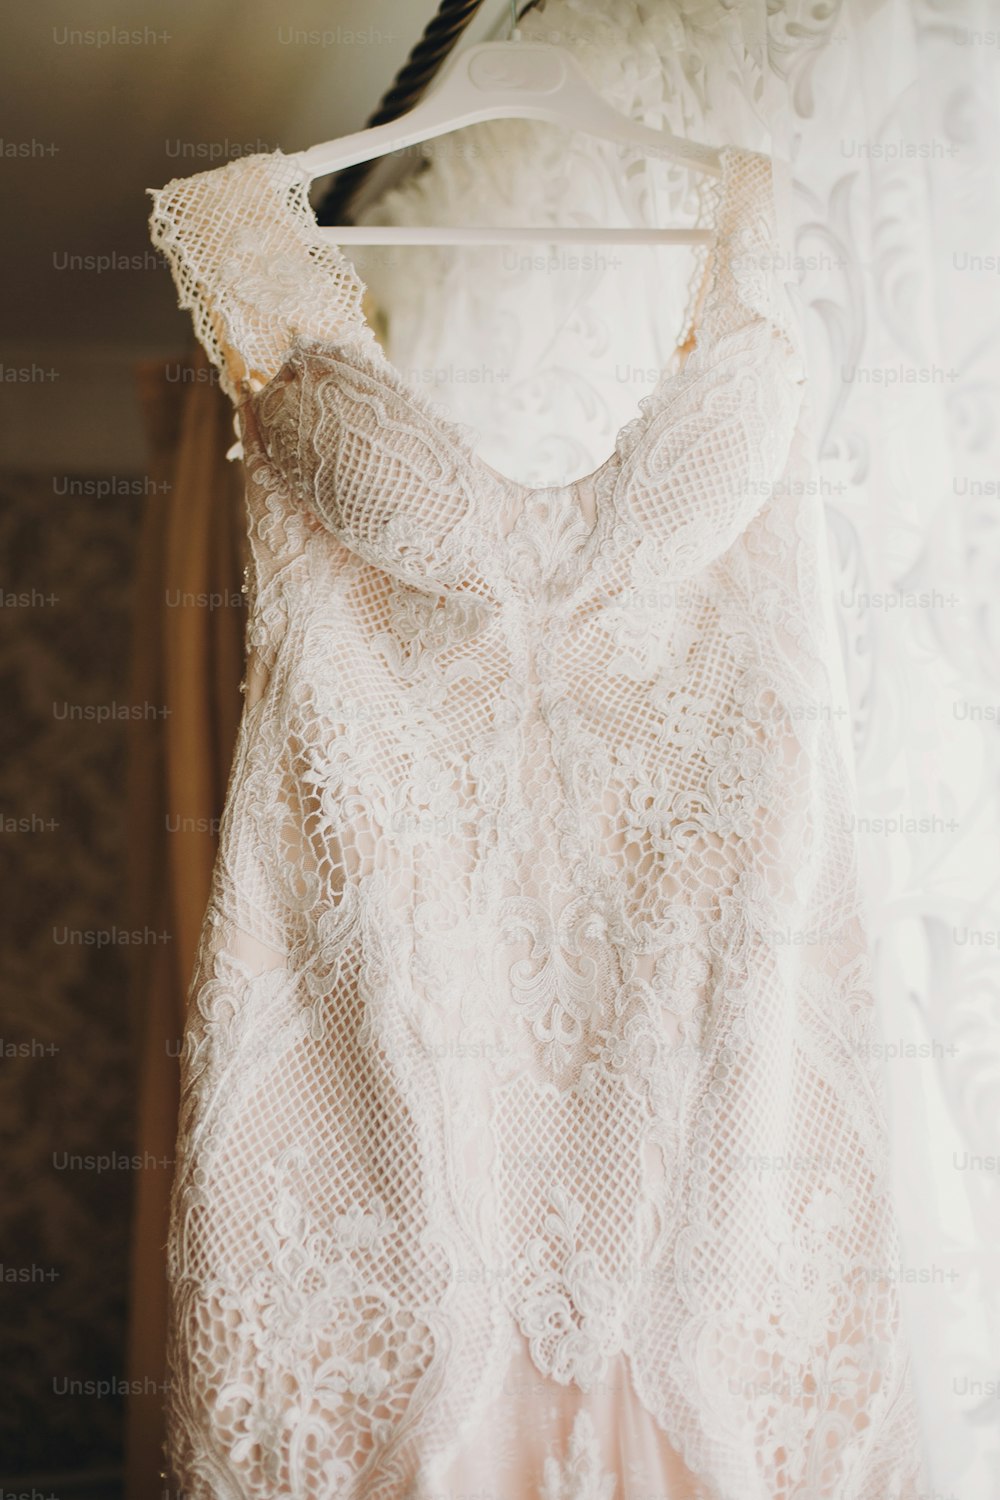 Vestido de novia moderno de lujo que cuelga en la ventana. Increíble vestido de novia elegante con detalles florales de encaje, color rosa pastel. Salón de bodas